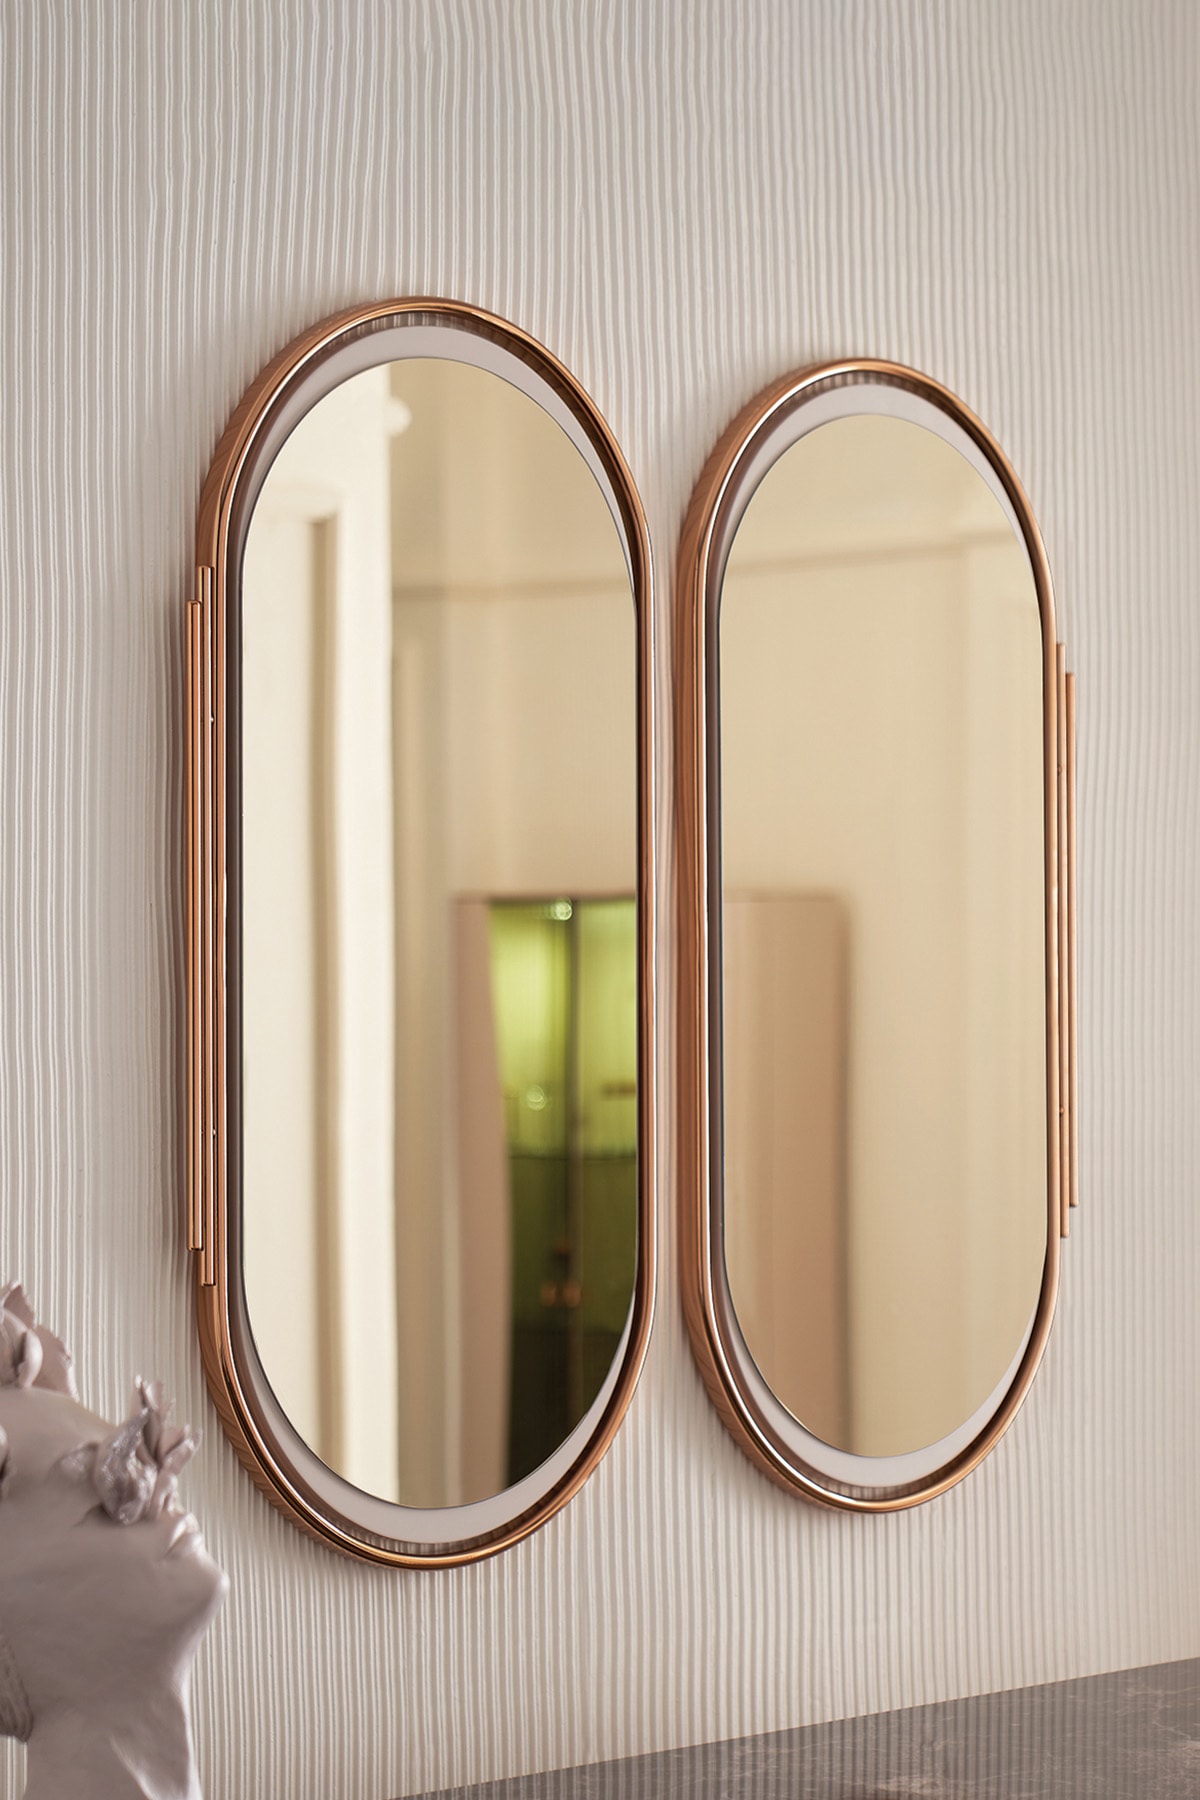 Enza Home Vienna Konsol, Dresuar Aynası